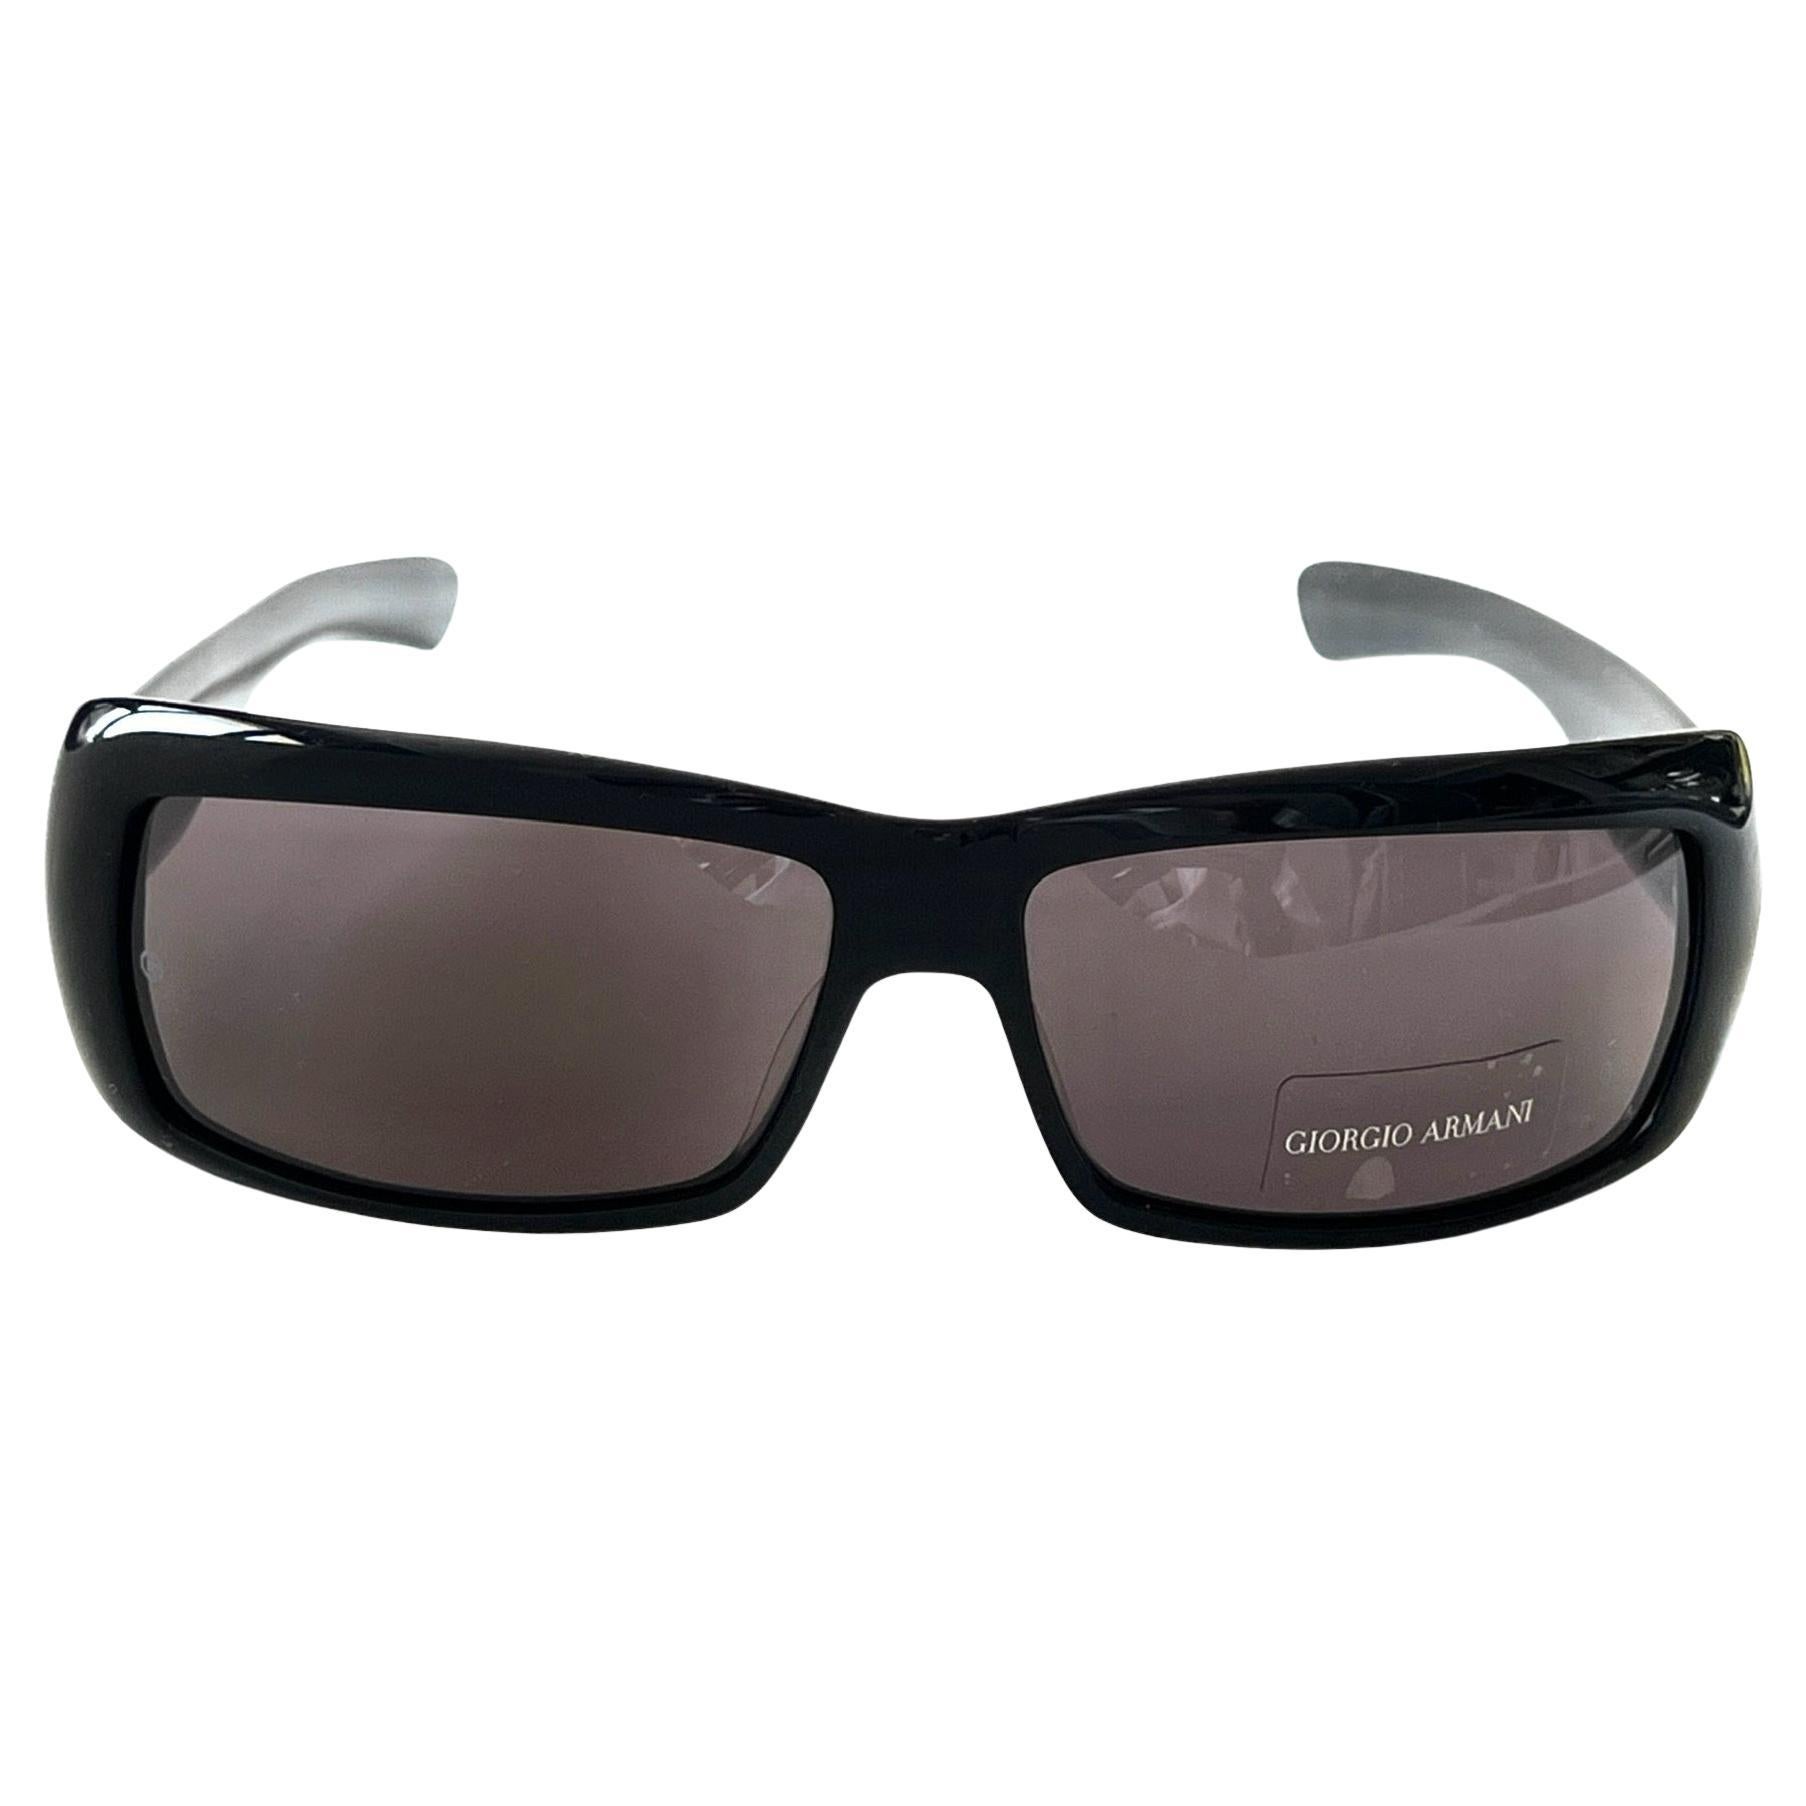 Giorgio Armani Nouvelles lunettes de soleil  art. 54/N/S col. 807BN (fabriqué en Italie)  en vente